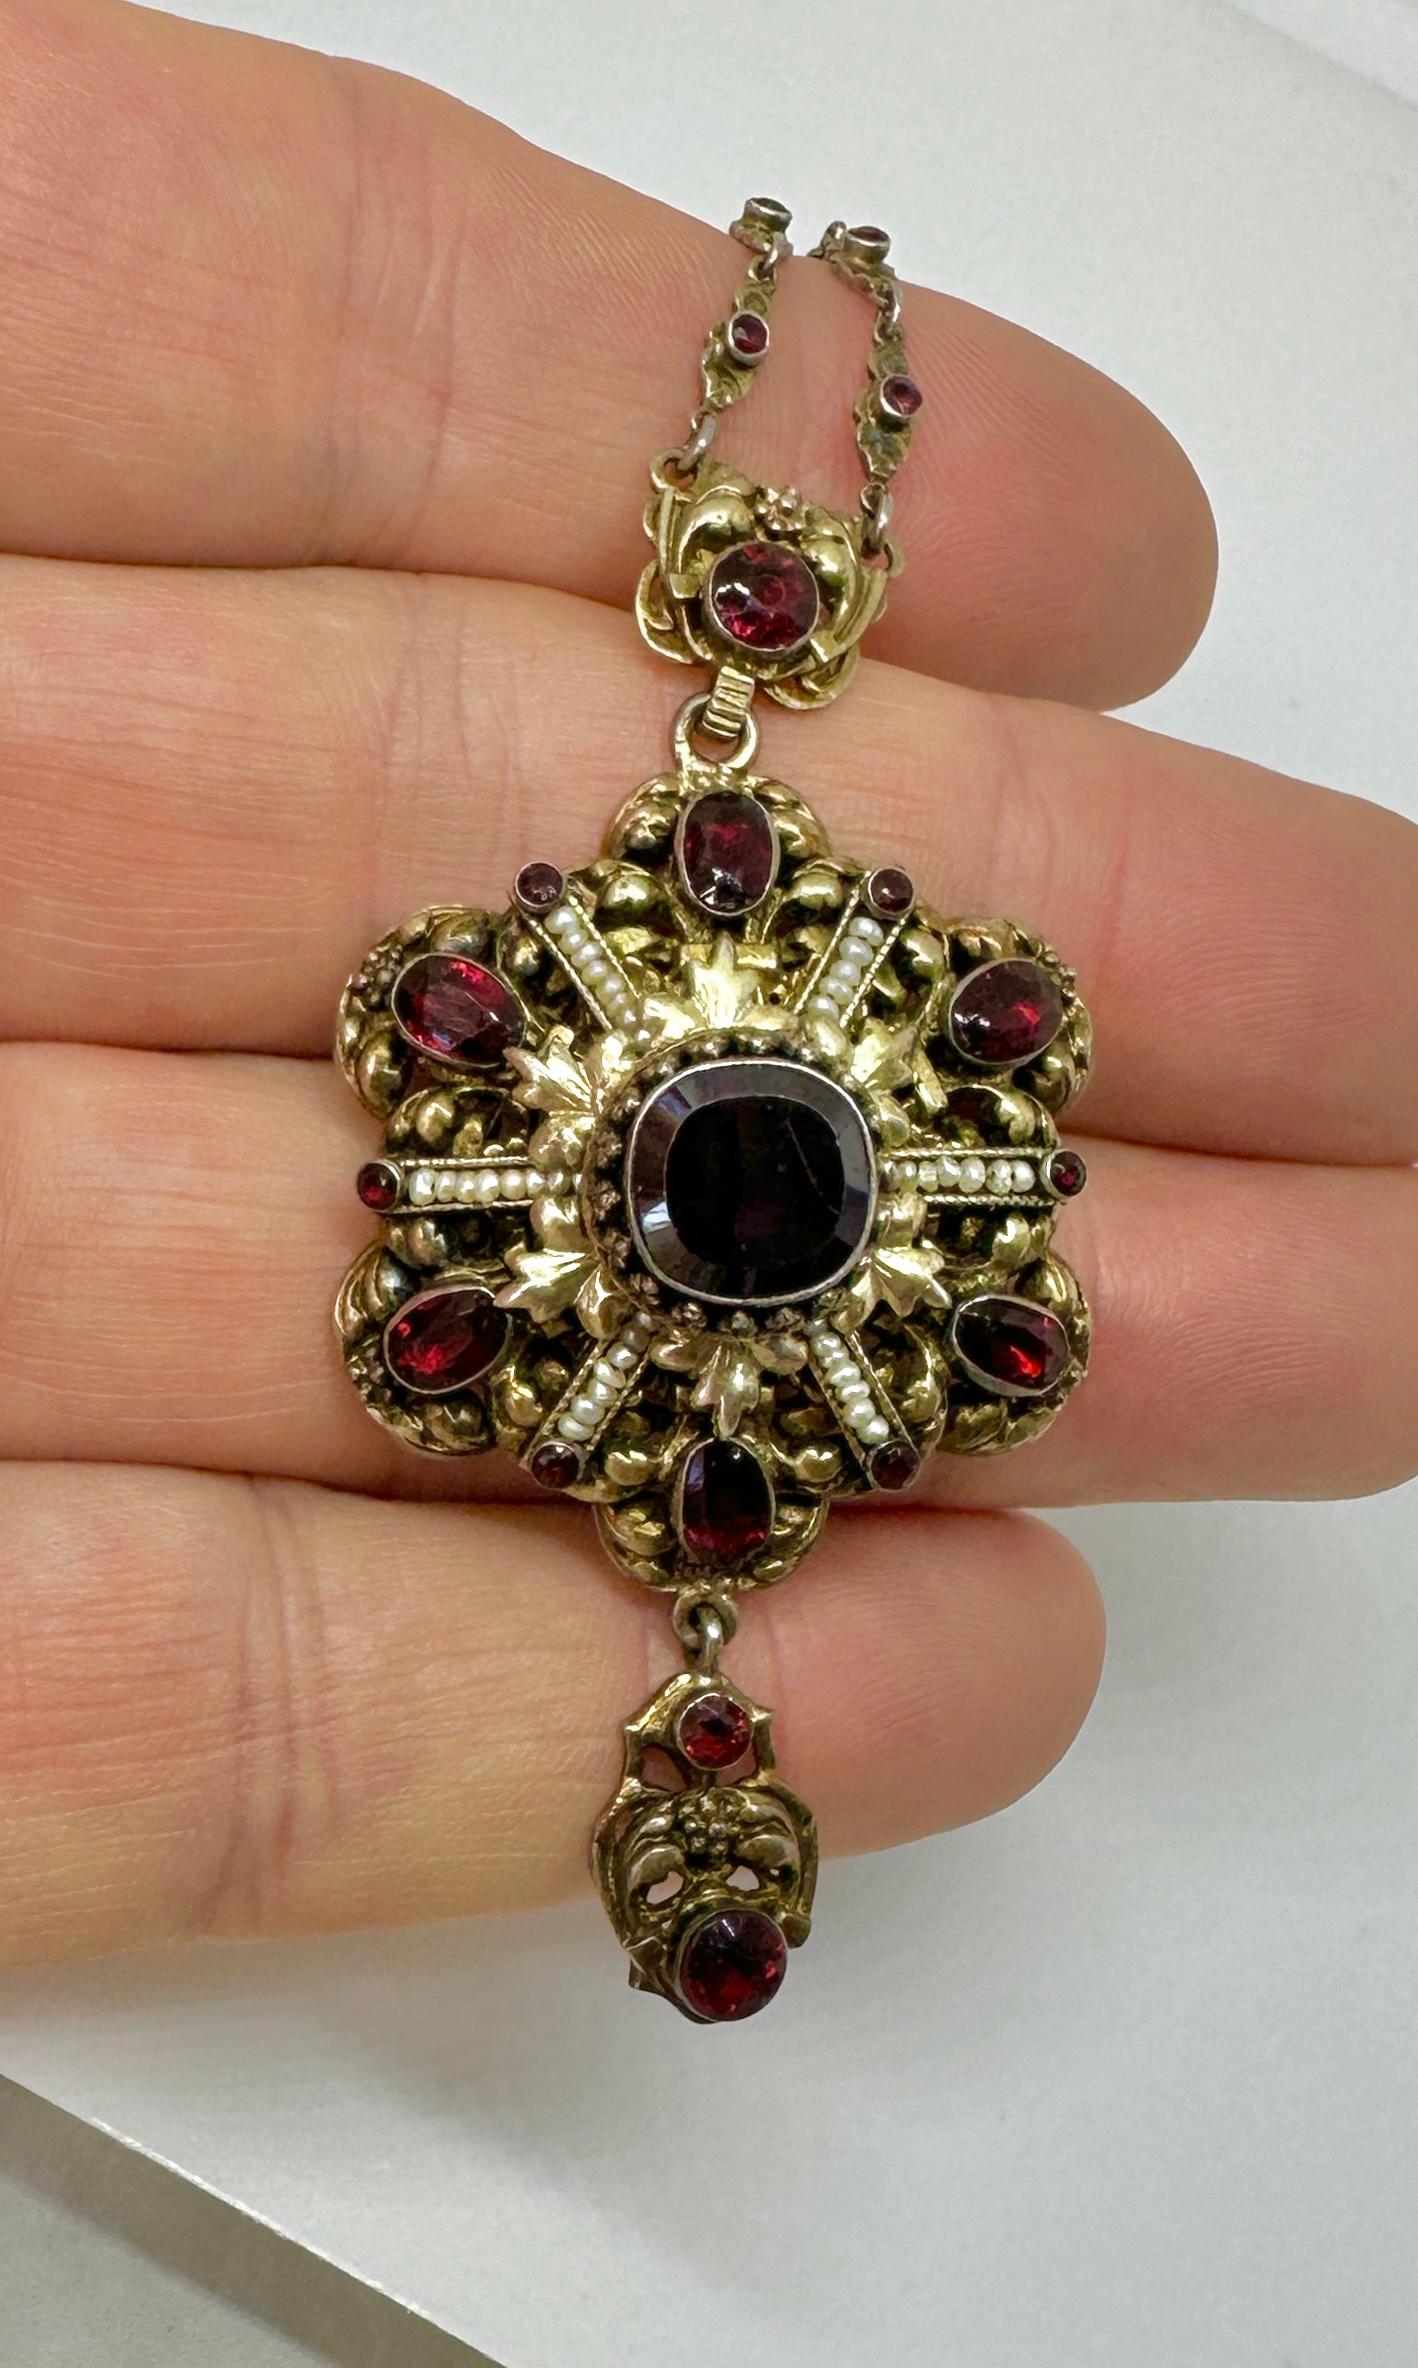 Il s'agit d'un magnifique collier pendentif austro-hongrois en grenat et perles, avec une chaîne sertie de grenats dans un motif de fleurs et de feuilles.  Il est de style néo-renaissance en argent doré et date d'environ 1870.  Reconnaissables à